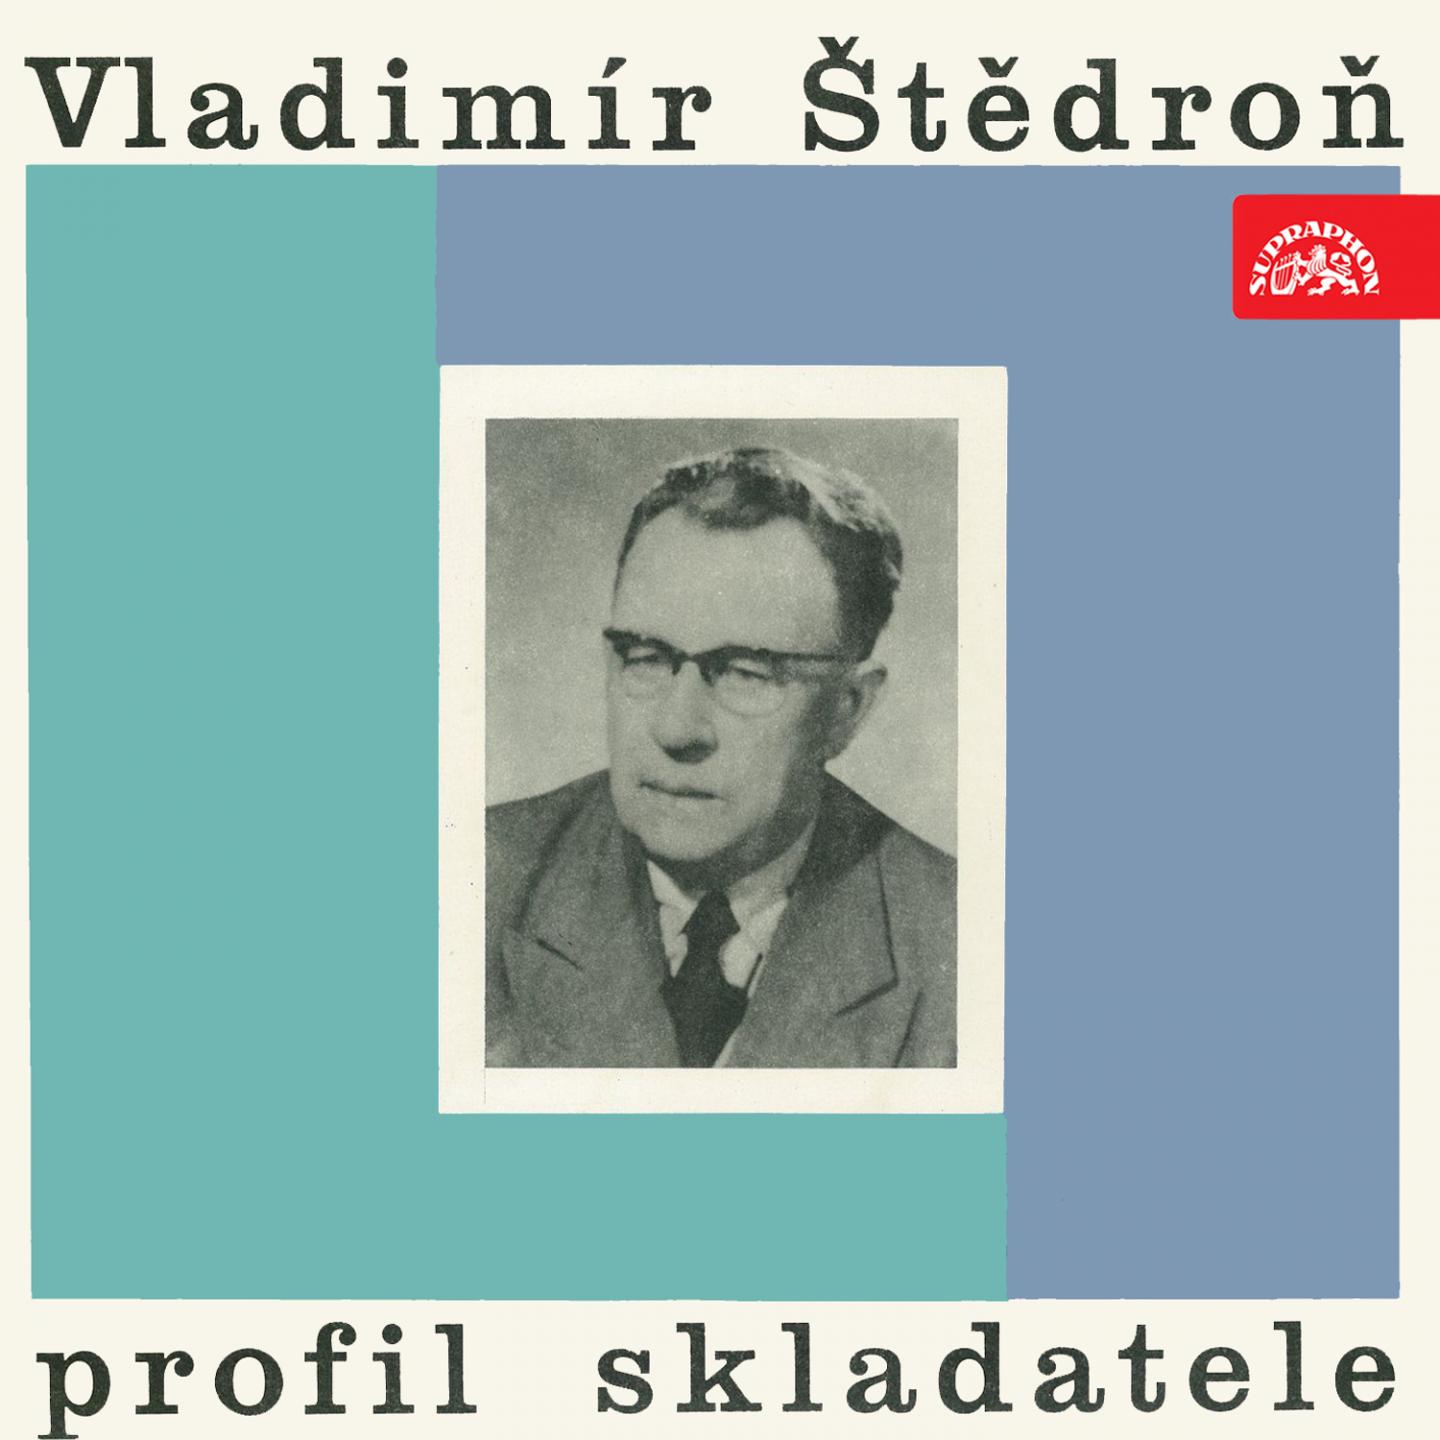 Vladimi r te dro: The Composer' s Profile